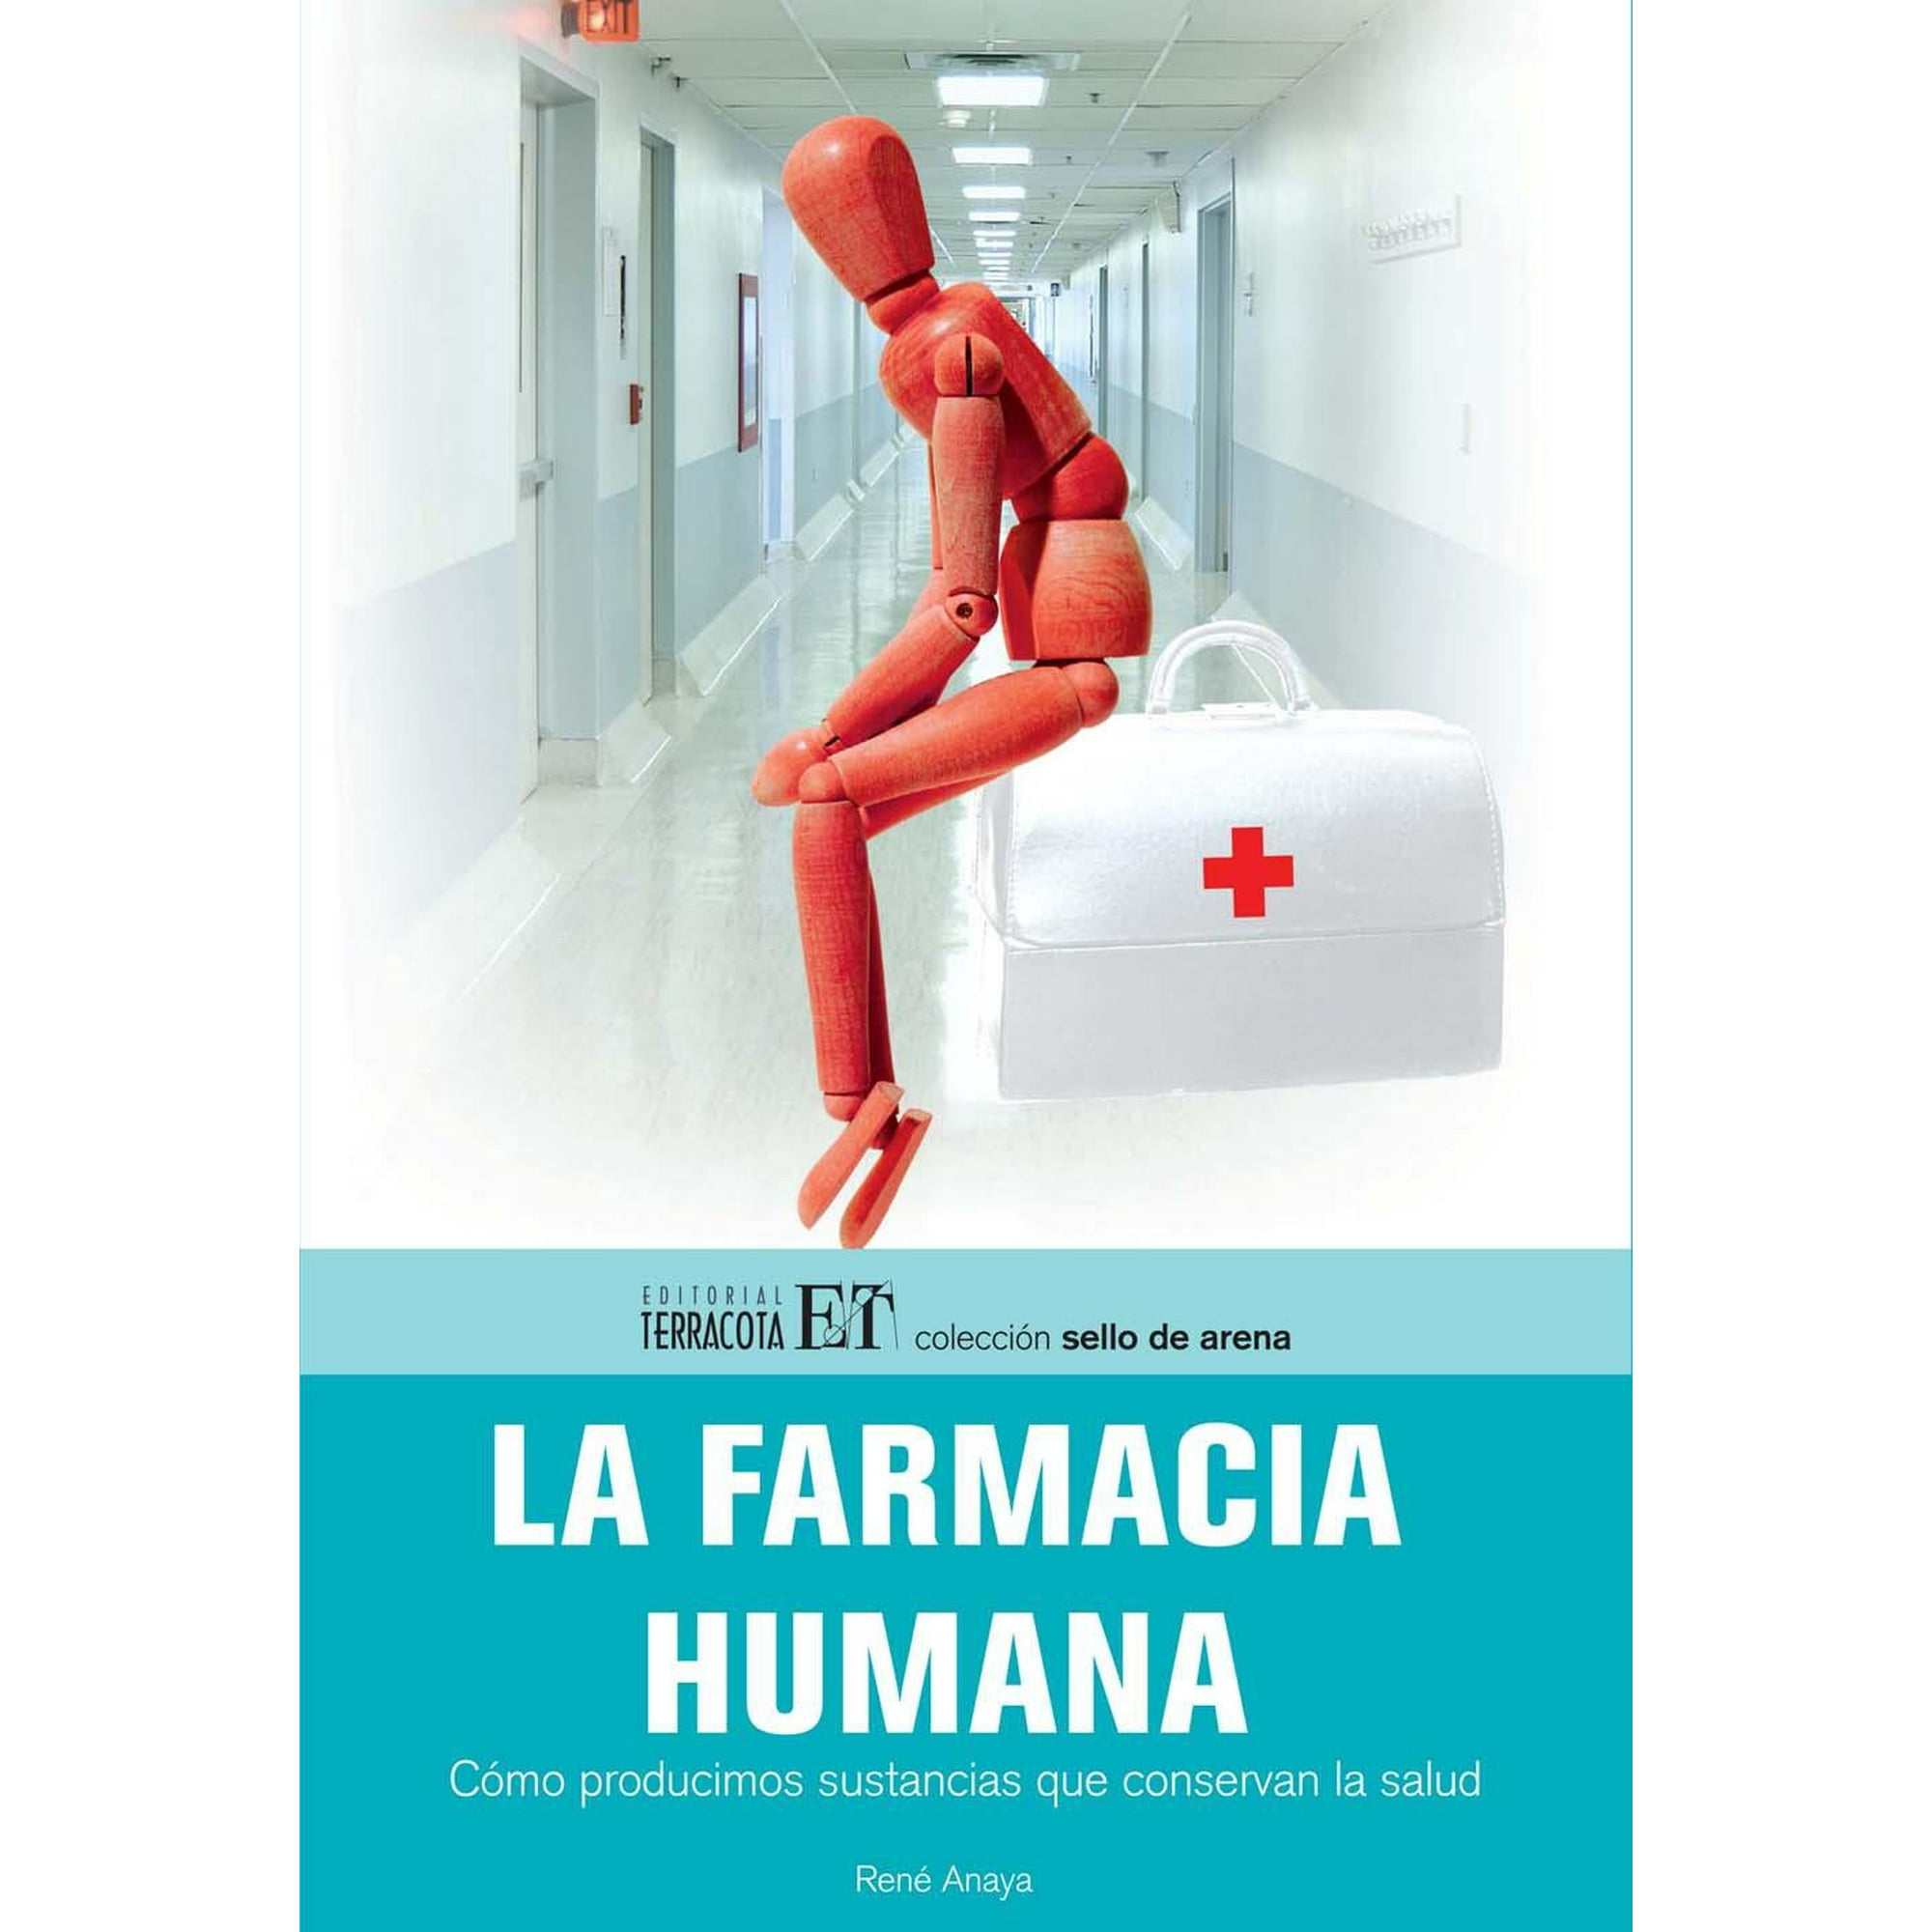 La Farmacia Humana Editorial Terracota 9789689224082 Bodega Aurrera En Línea 9992